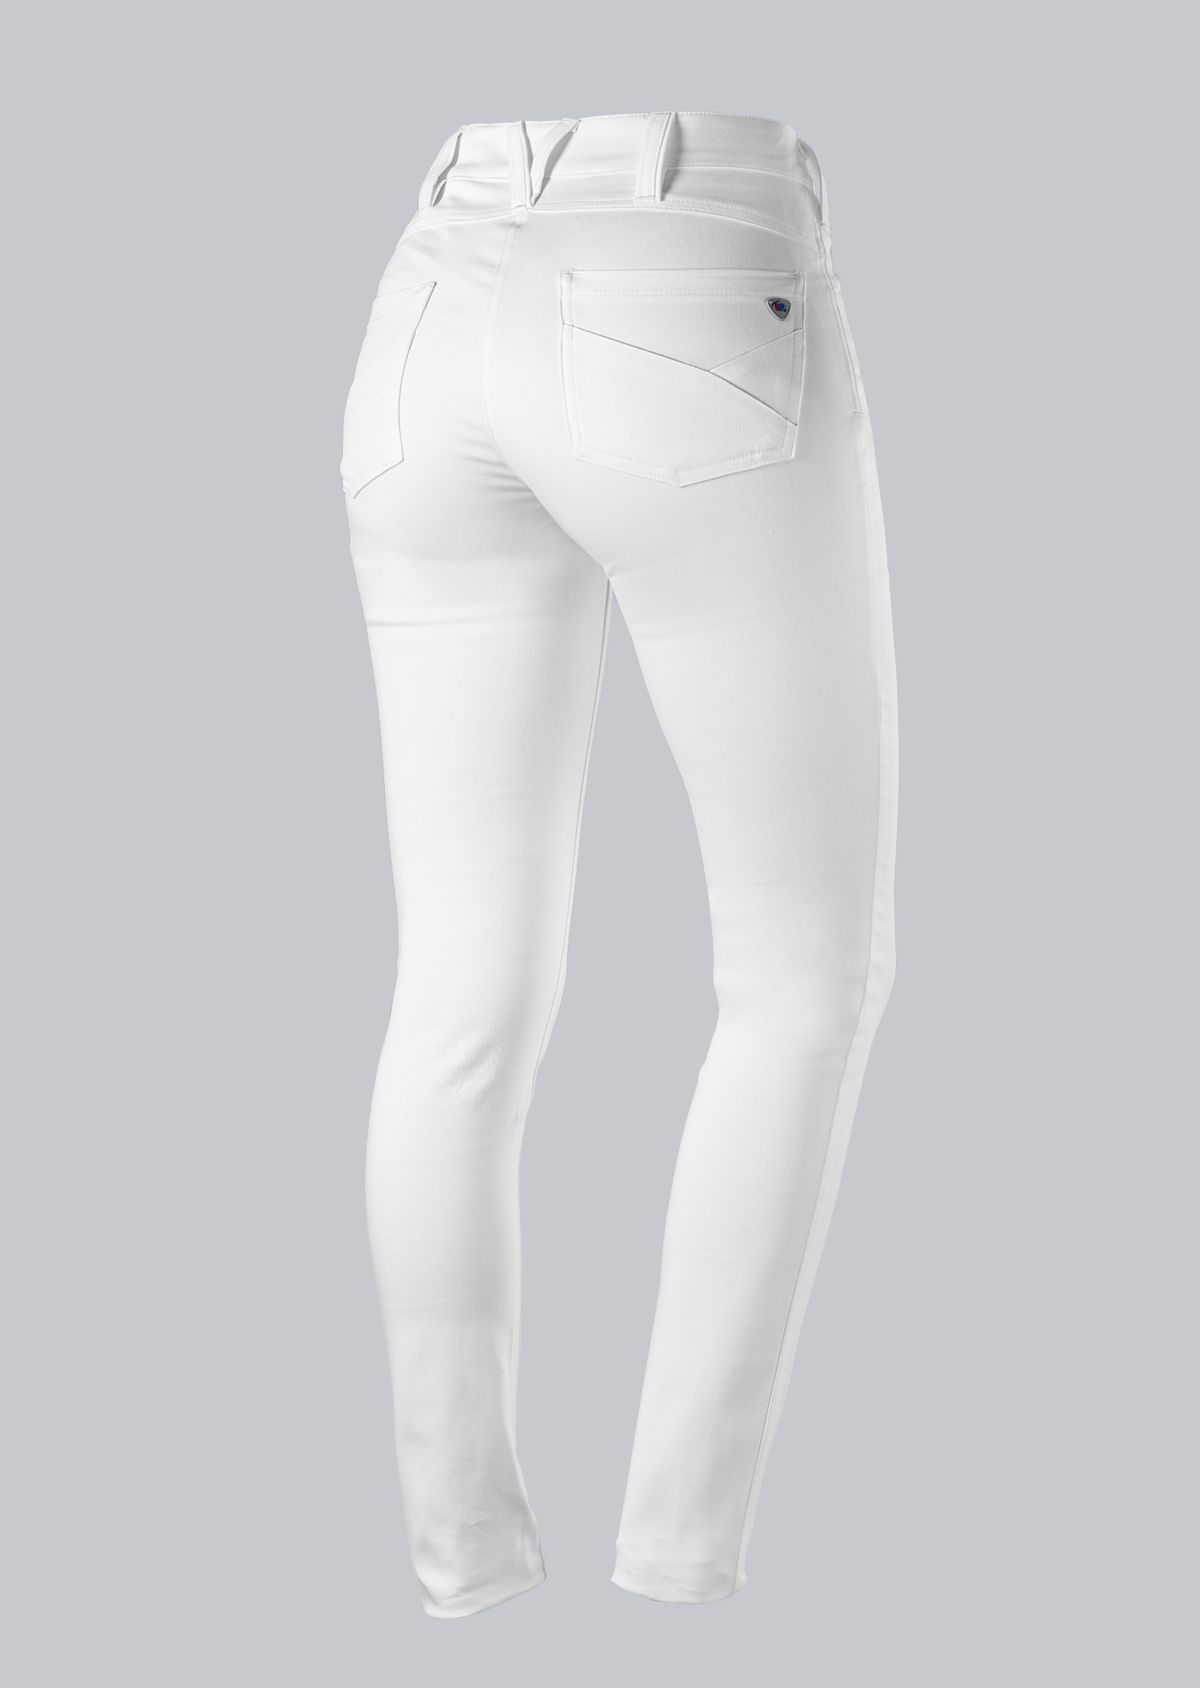 BP® Stretch women's skinny jeans